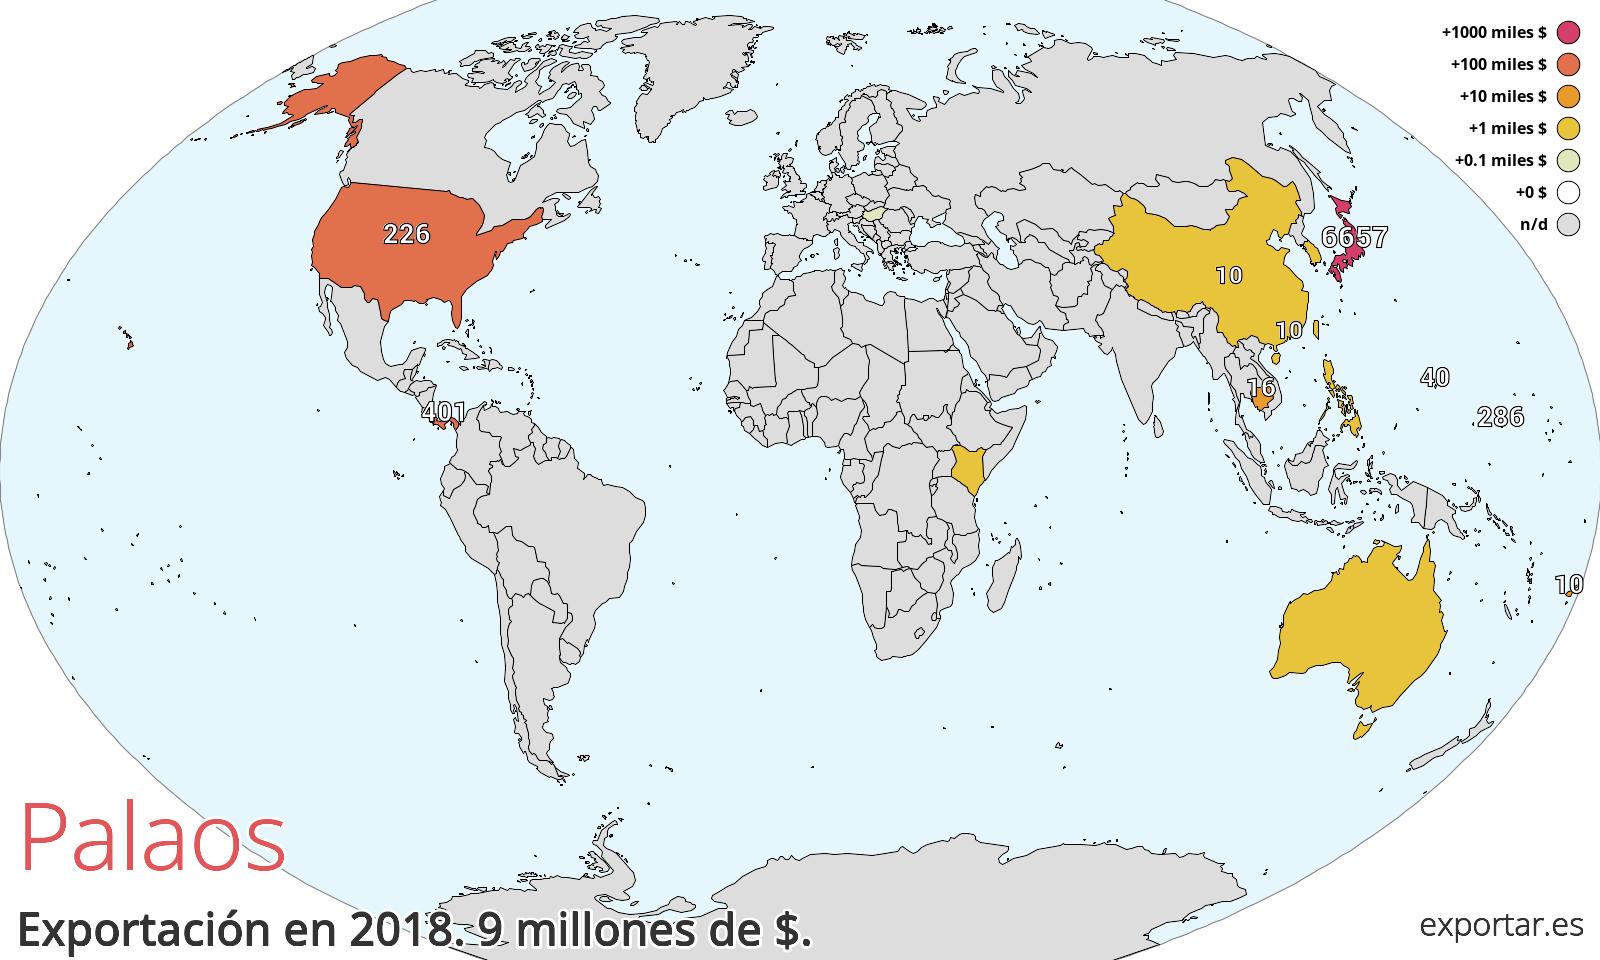 Mapa de exportación de Palaos en 2018.